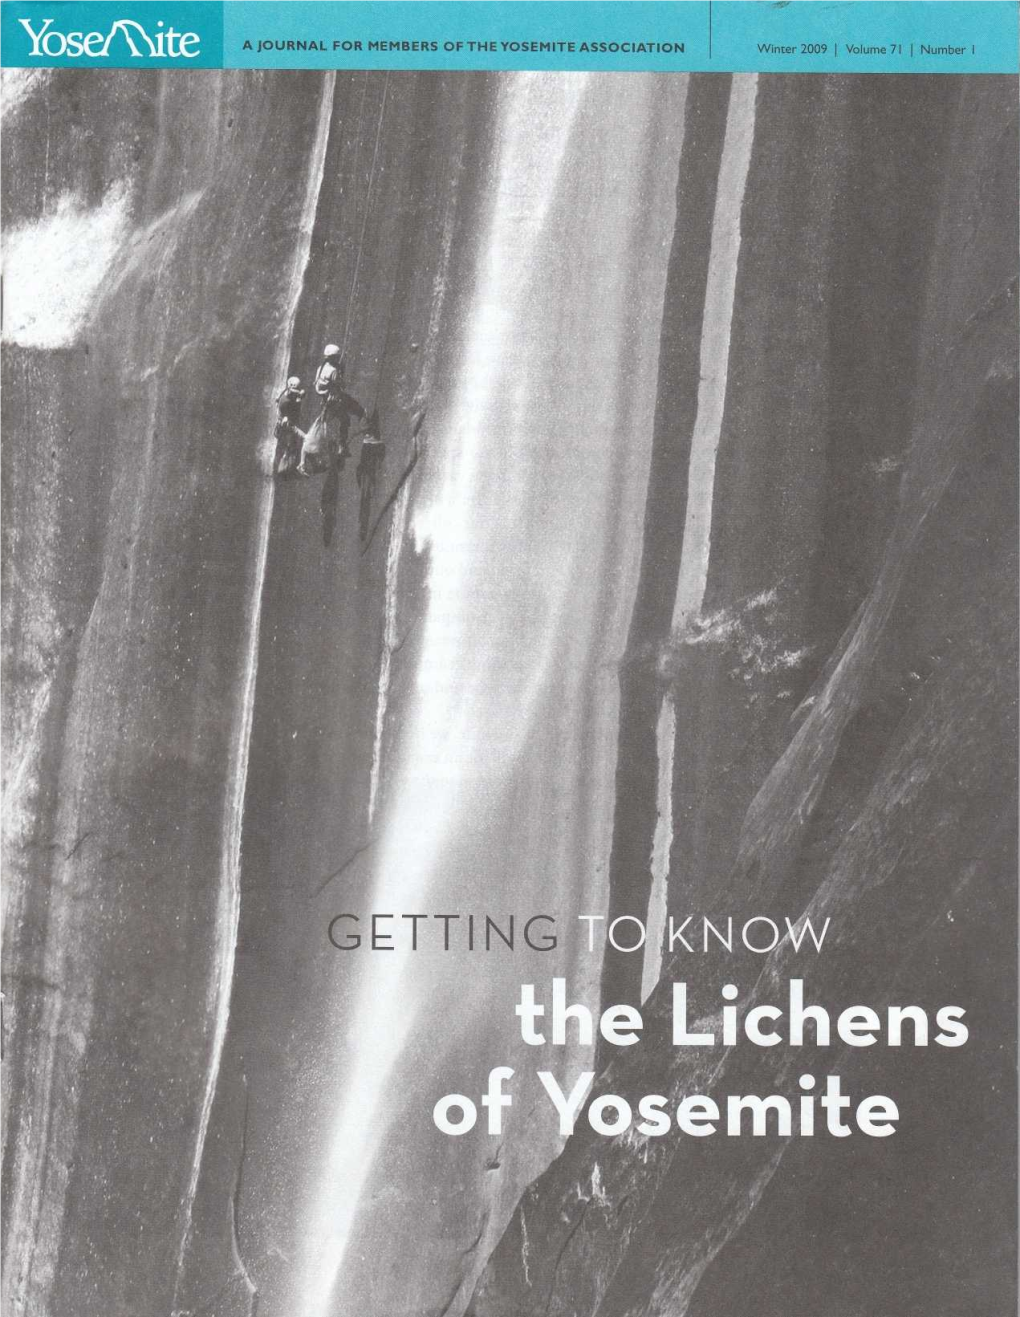 The Lichens of Yosemite